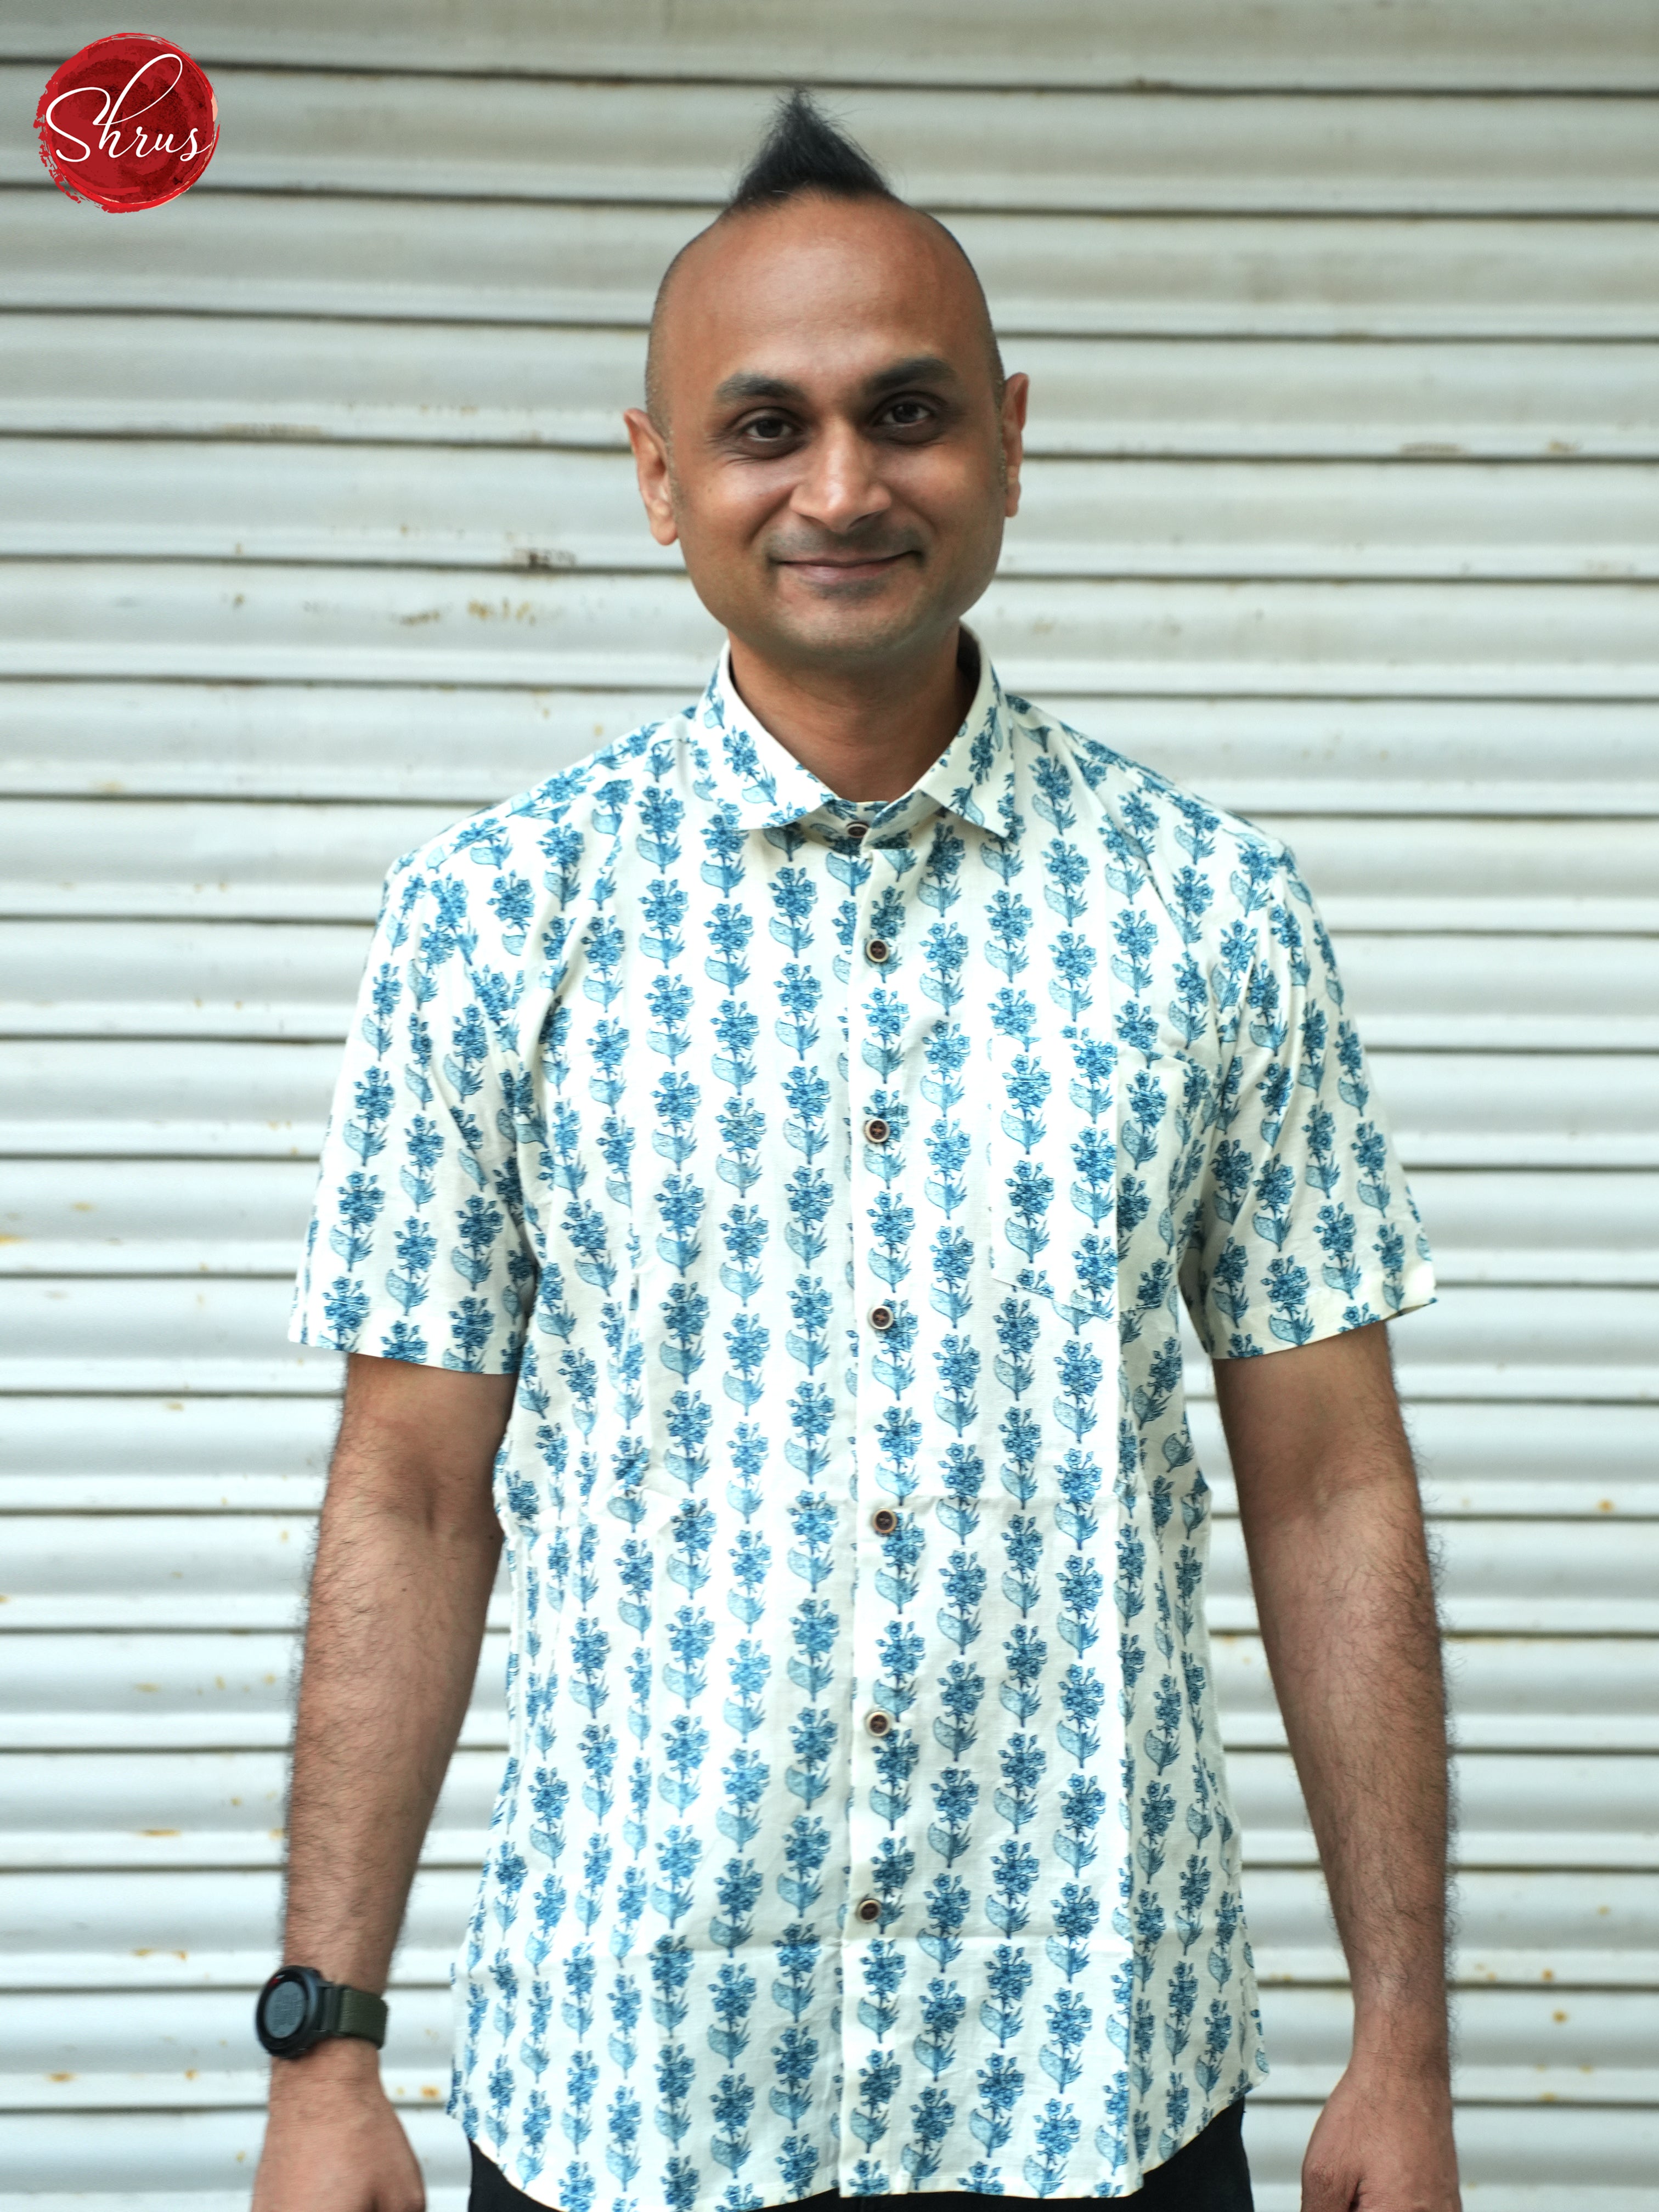 Cream & Blue - Readymade Shirts - Shop on ShrusEternity.com